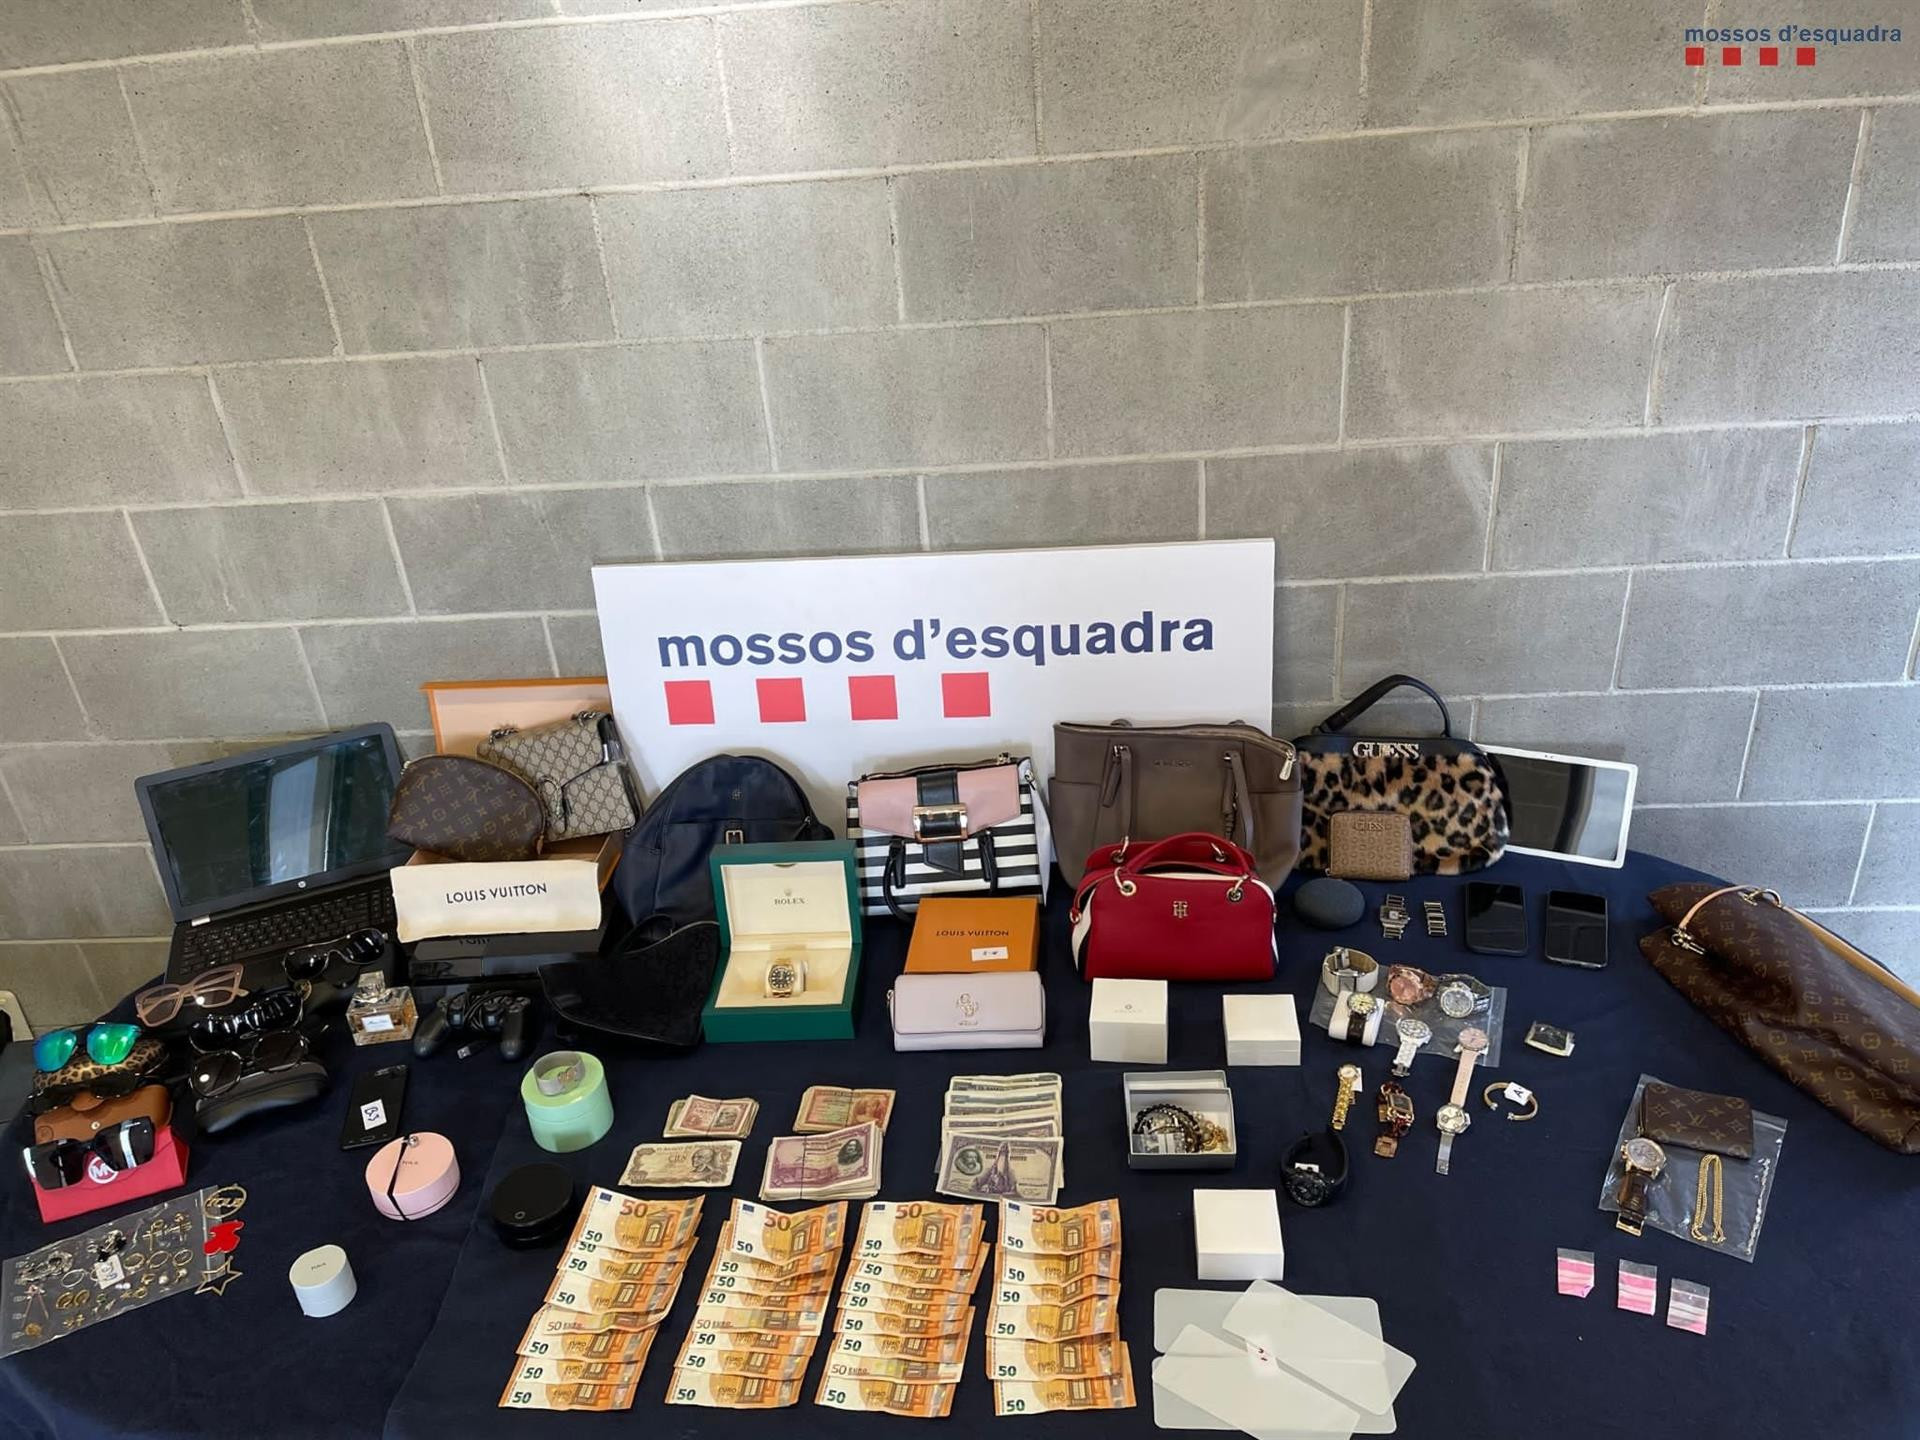 Dinero y otros objetos robados durante los robos en Barcelona - MOSSOS D'ESQUADRA